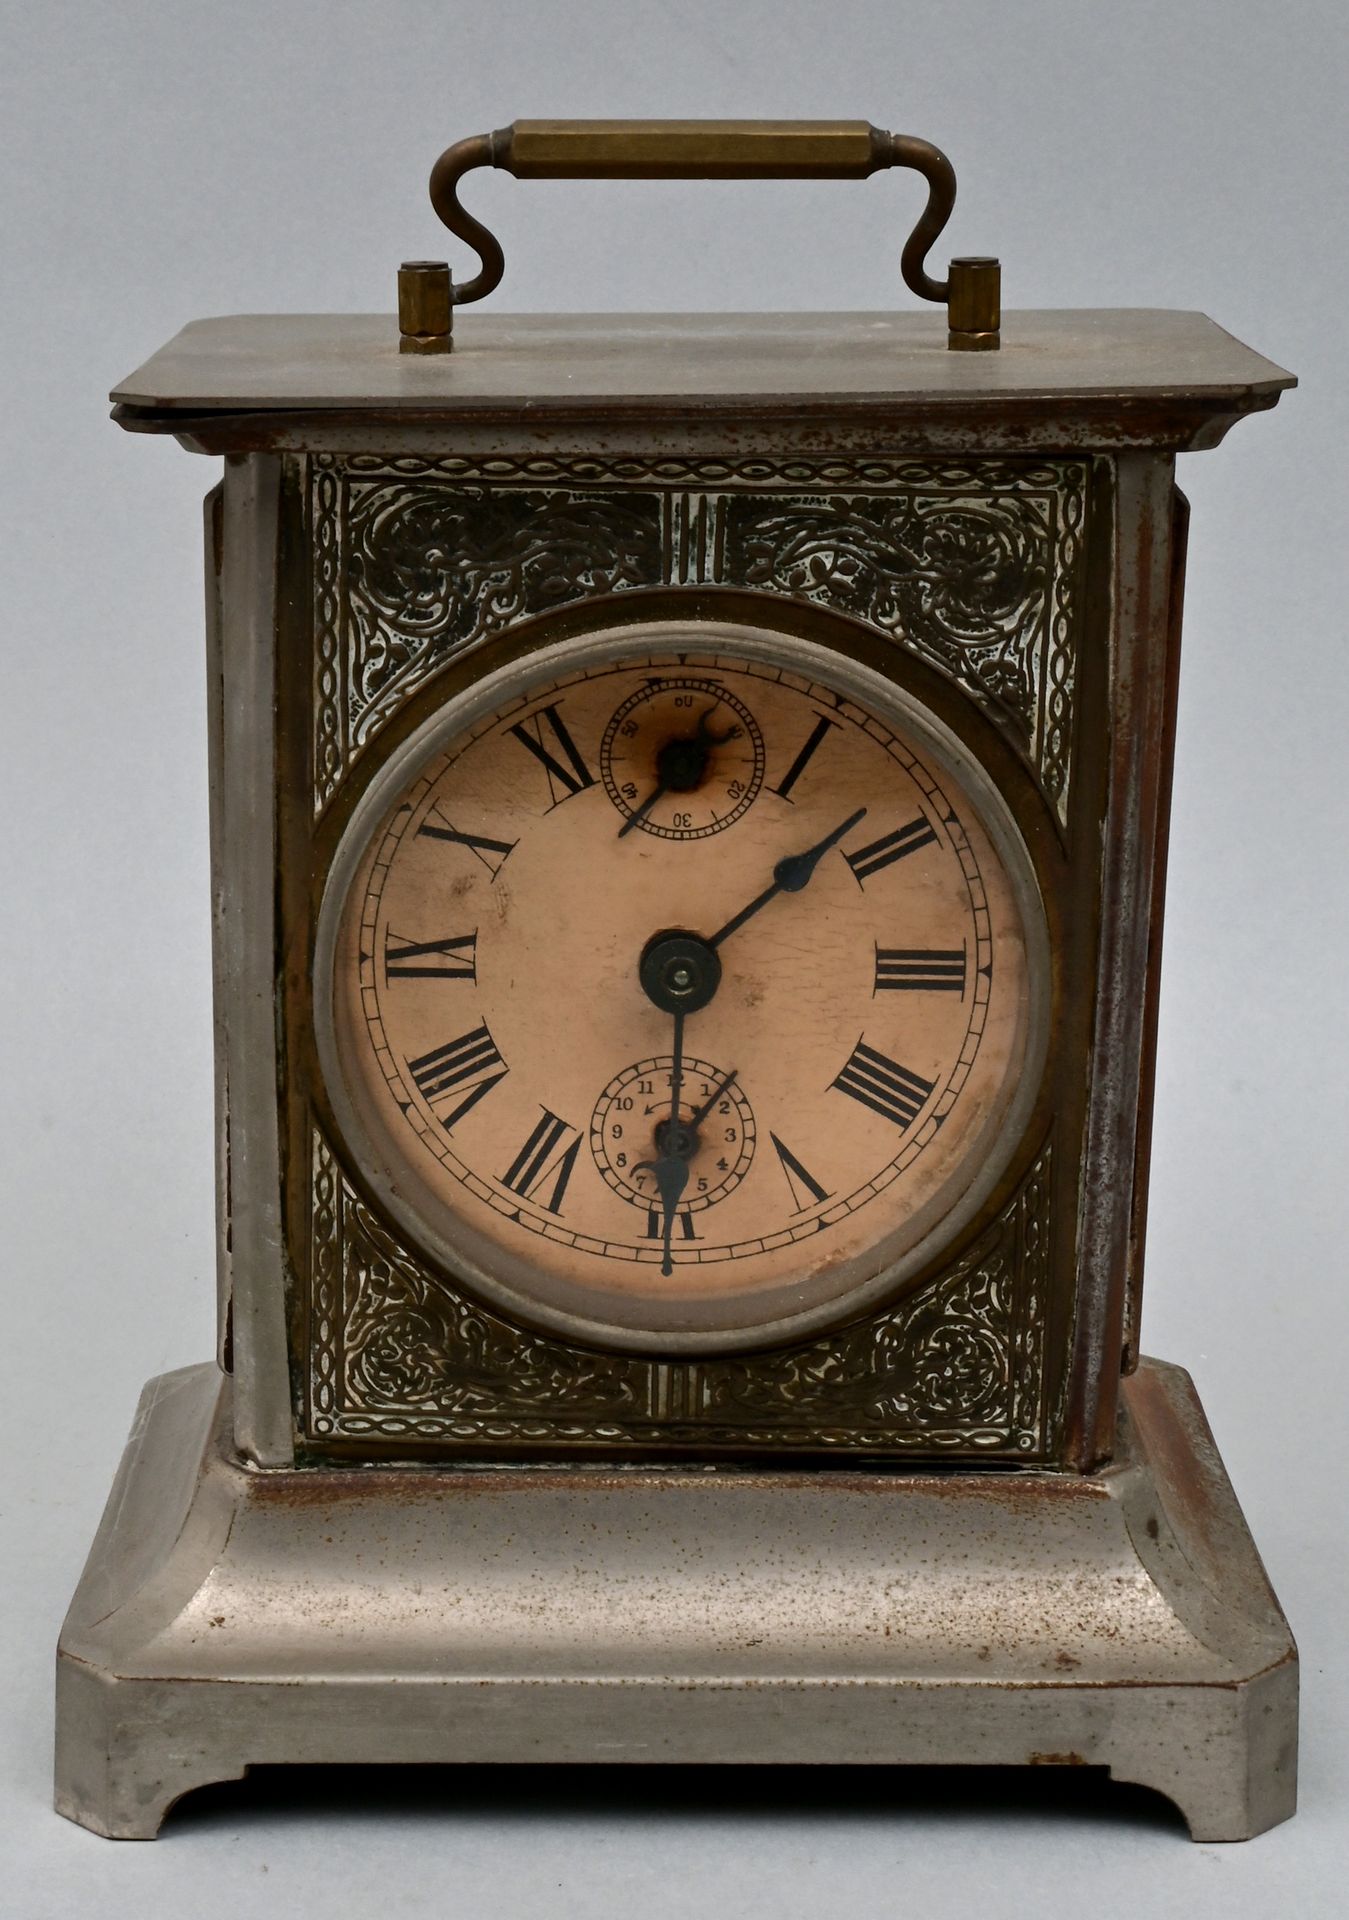 Tischuhr / Reisewecker / Alarm clock Horloge de table/réveil de voyage, Schrambe&hellip;